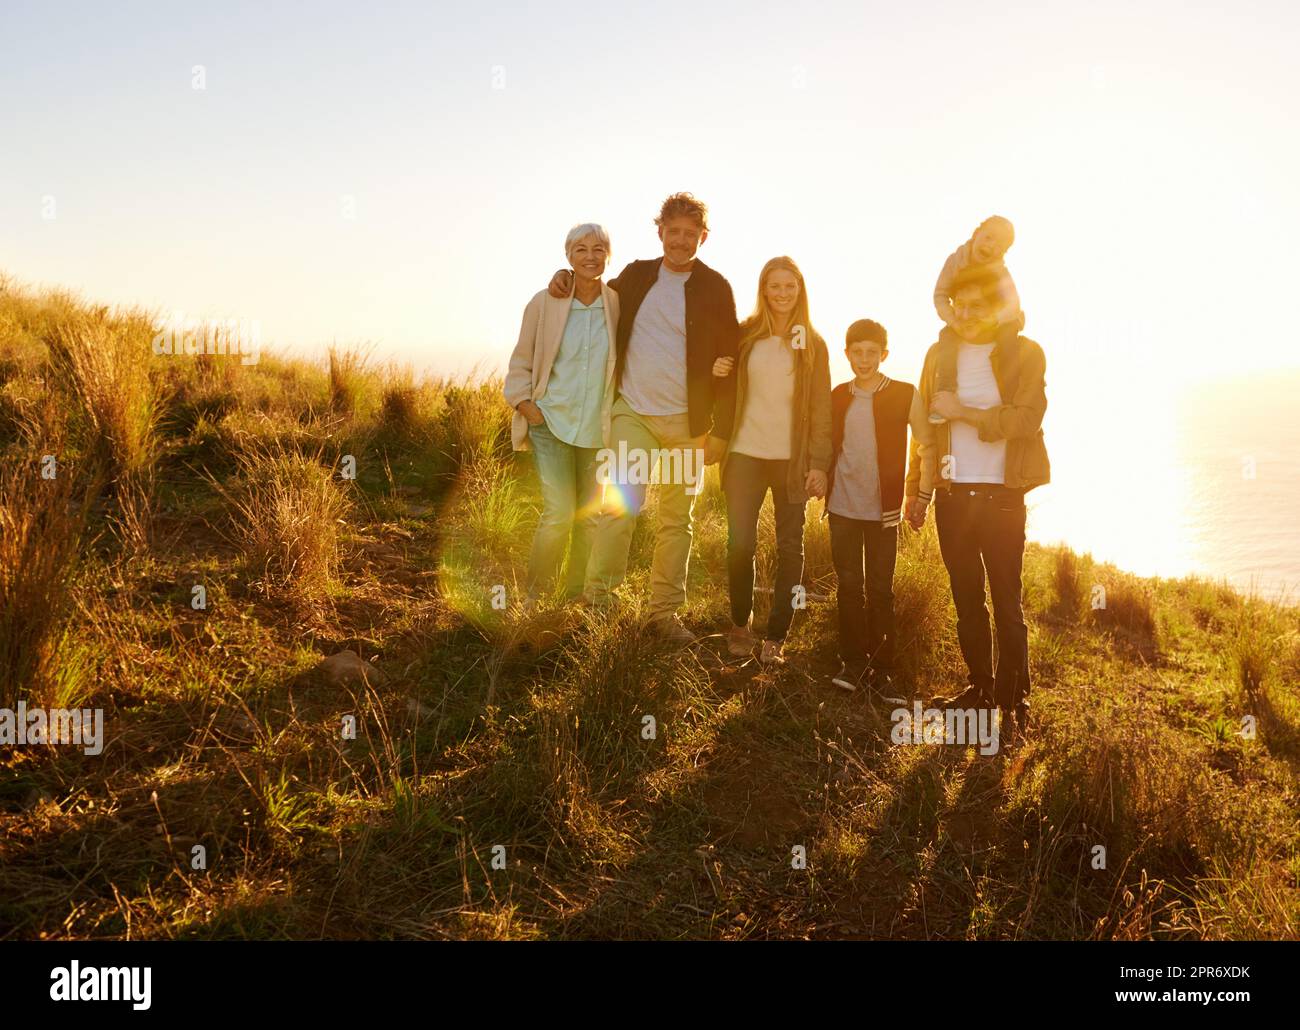 Le plus heureux quand le tout est réuni. Portrait d'une famille heureuse debout sur une colline herbeuse au coucher du soleil. Banque D'Images